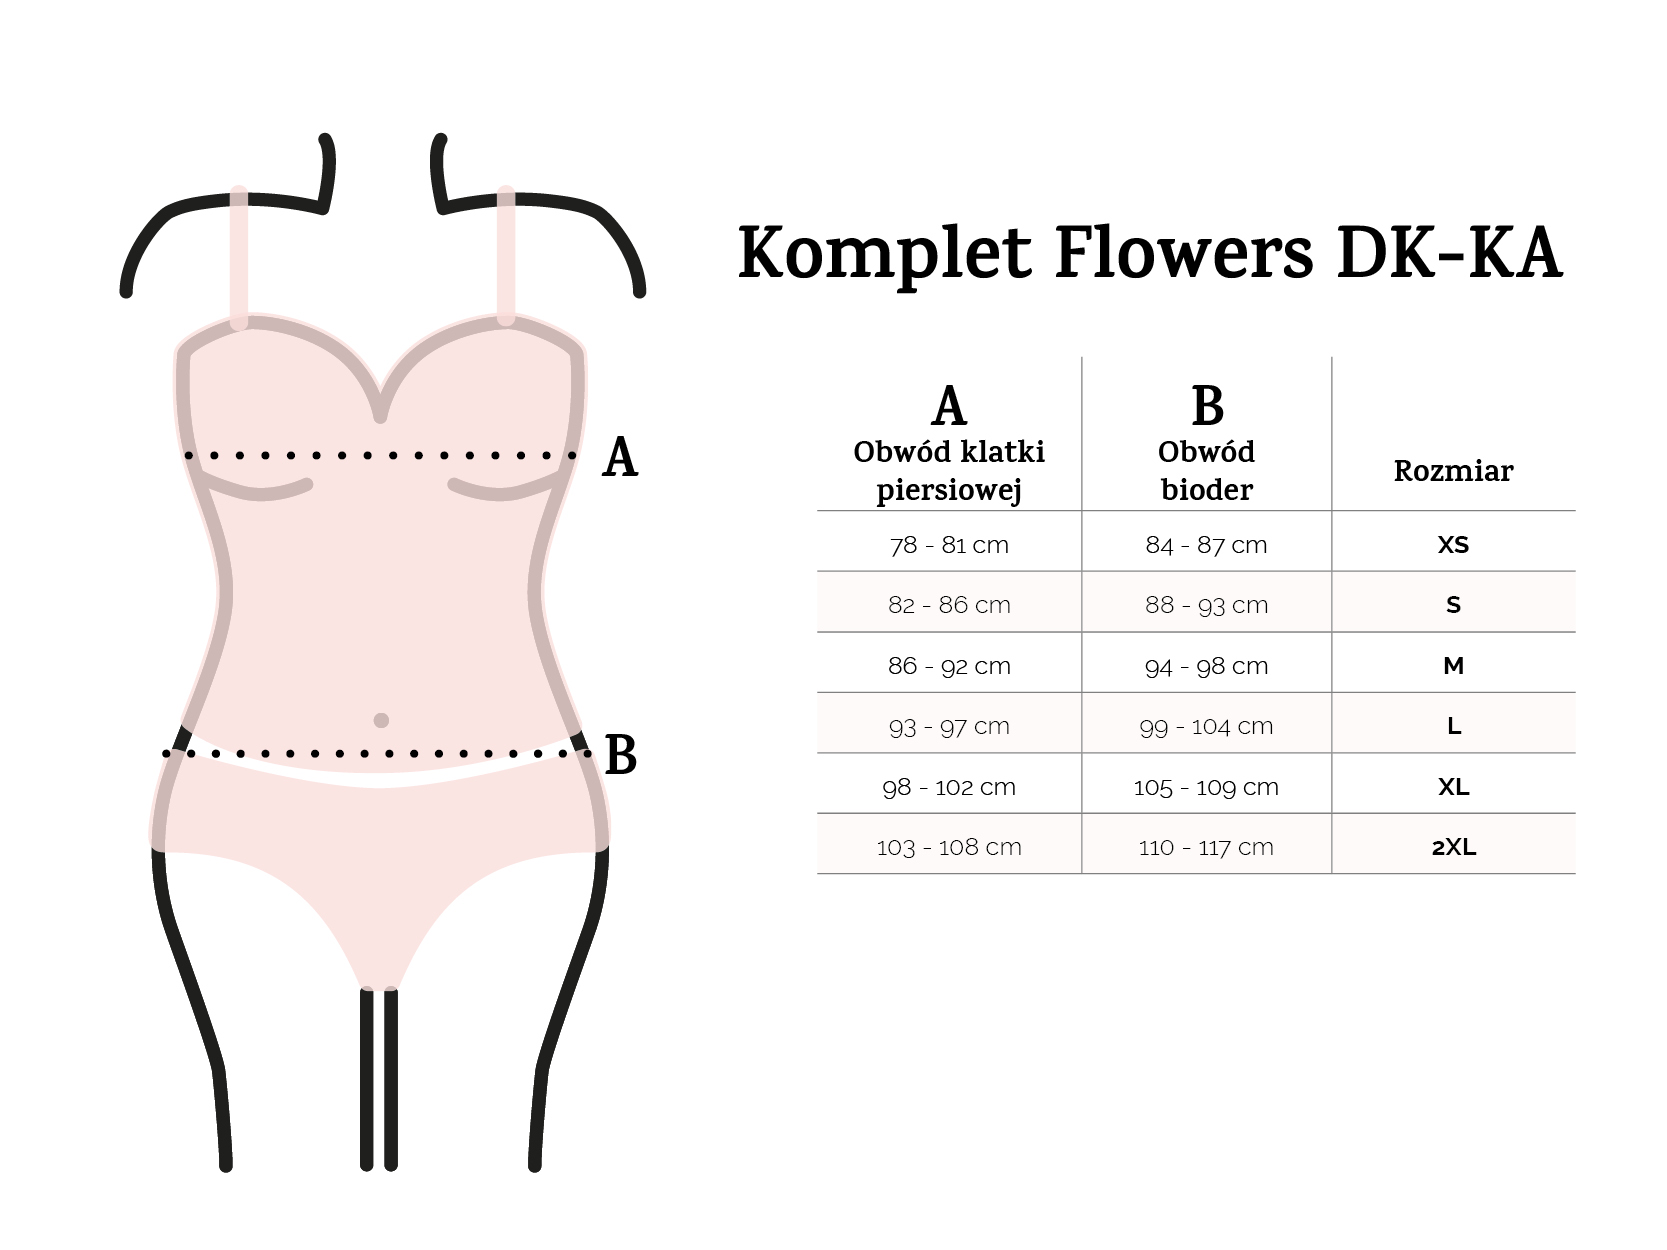 Komplet Flowers DK-KA